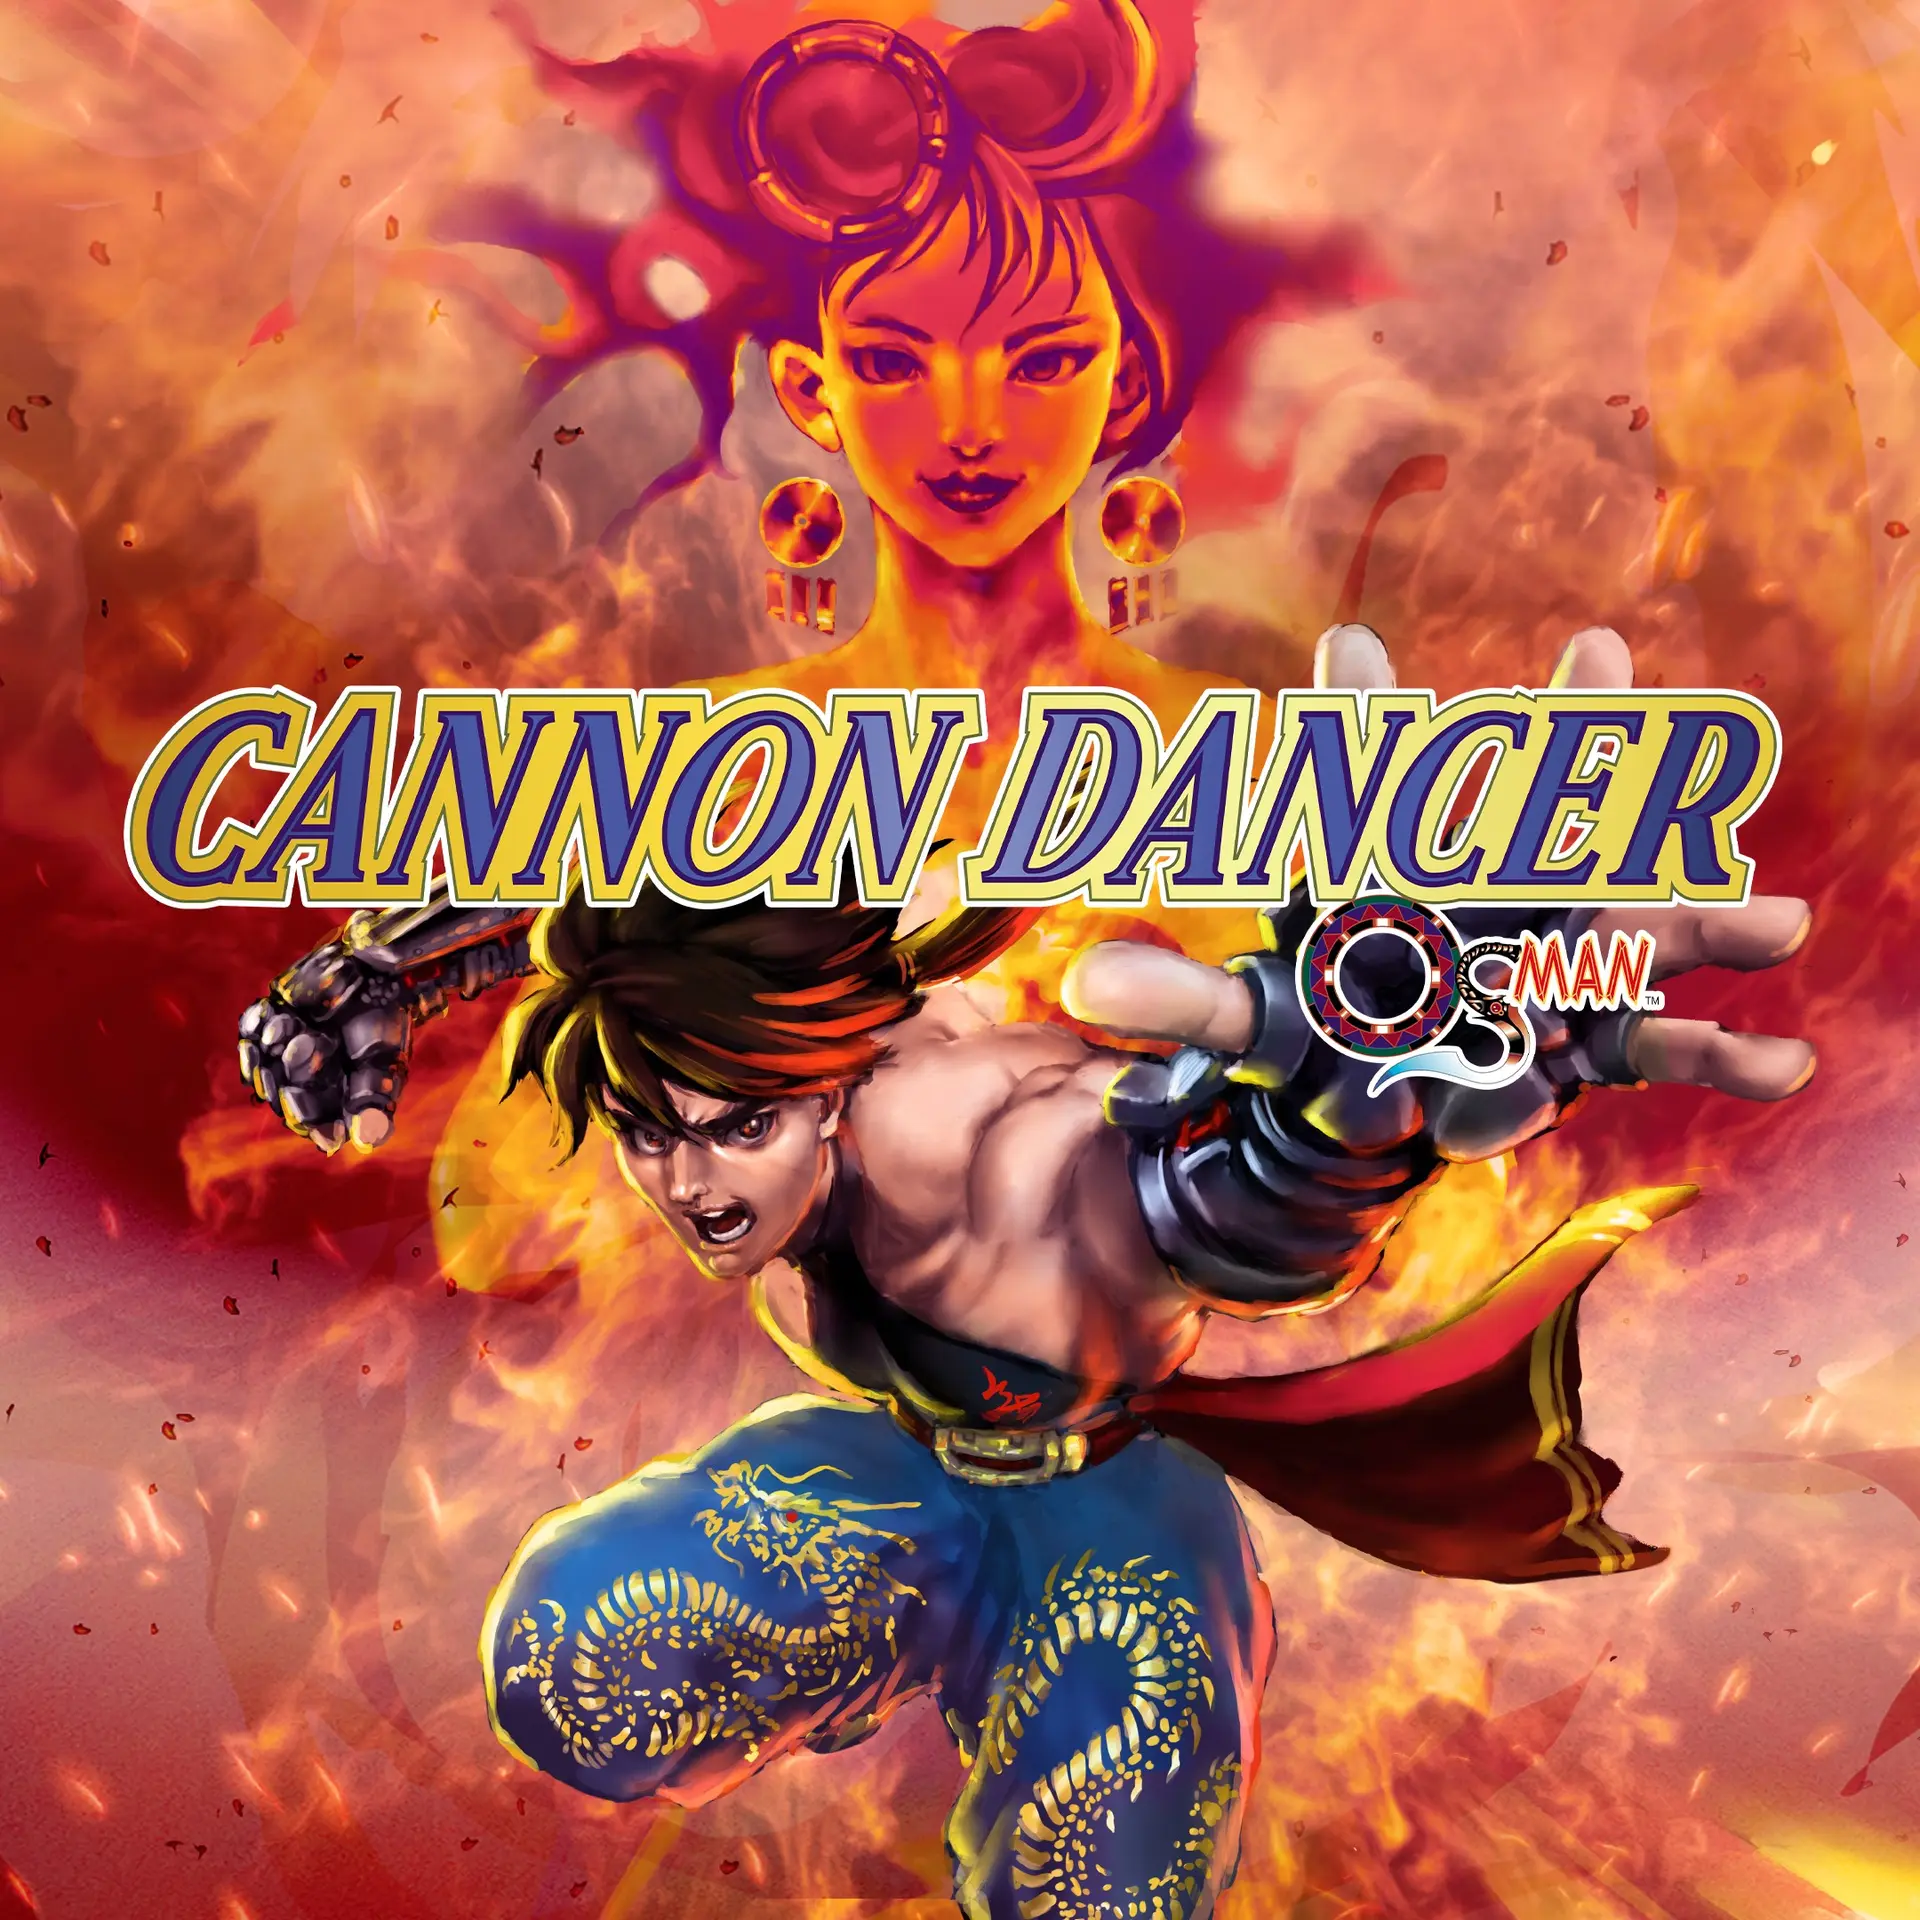 Cannon Dancer - Osman (Xbox Game EU)